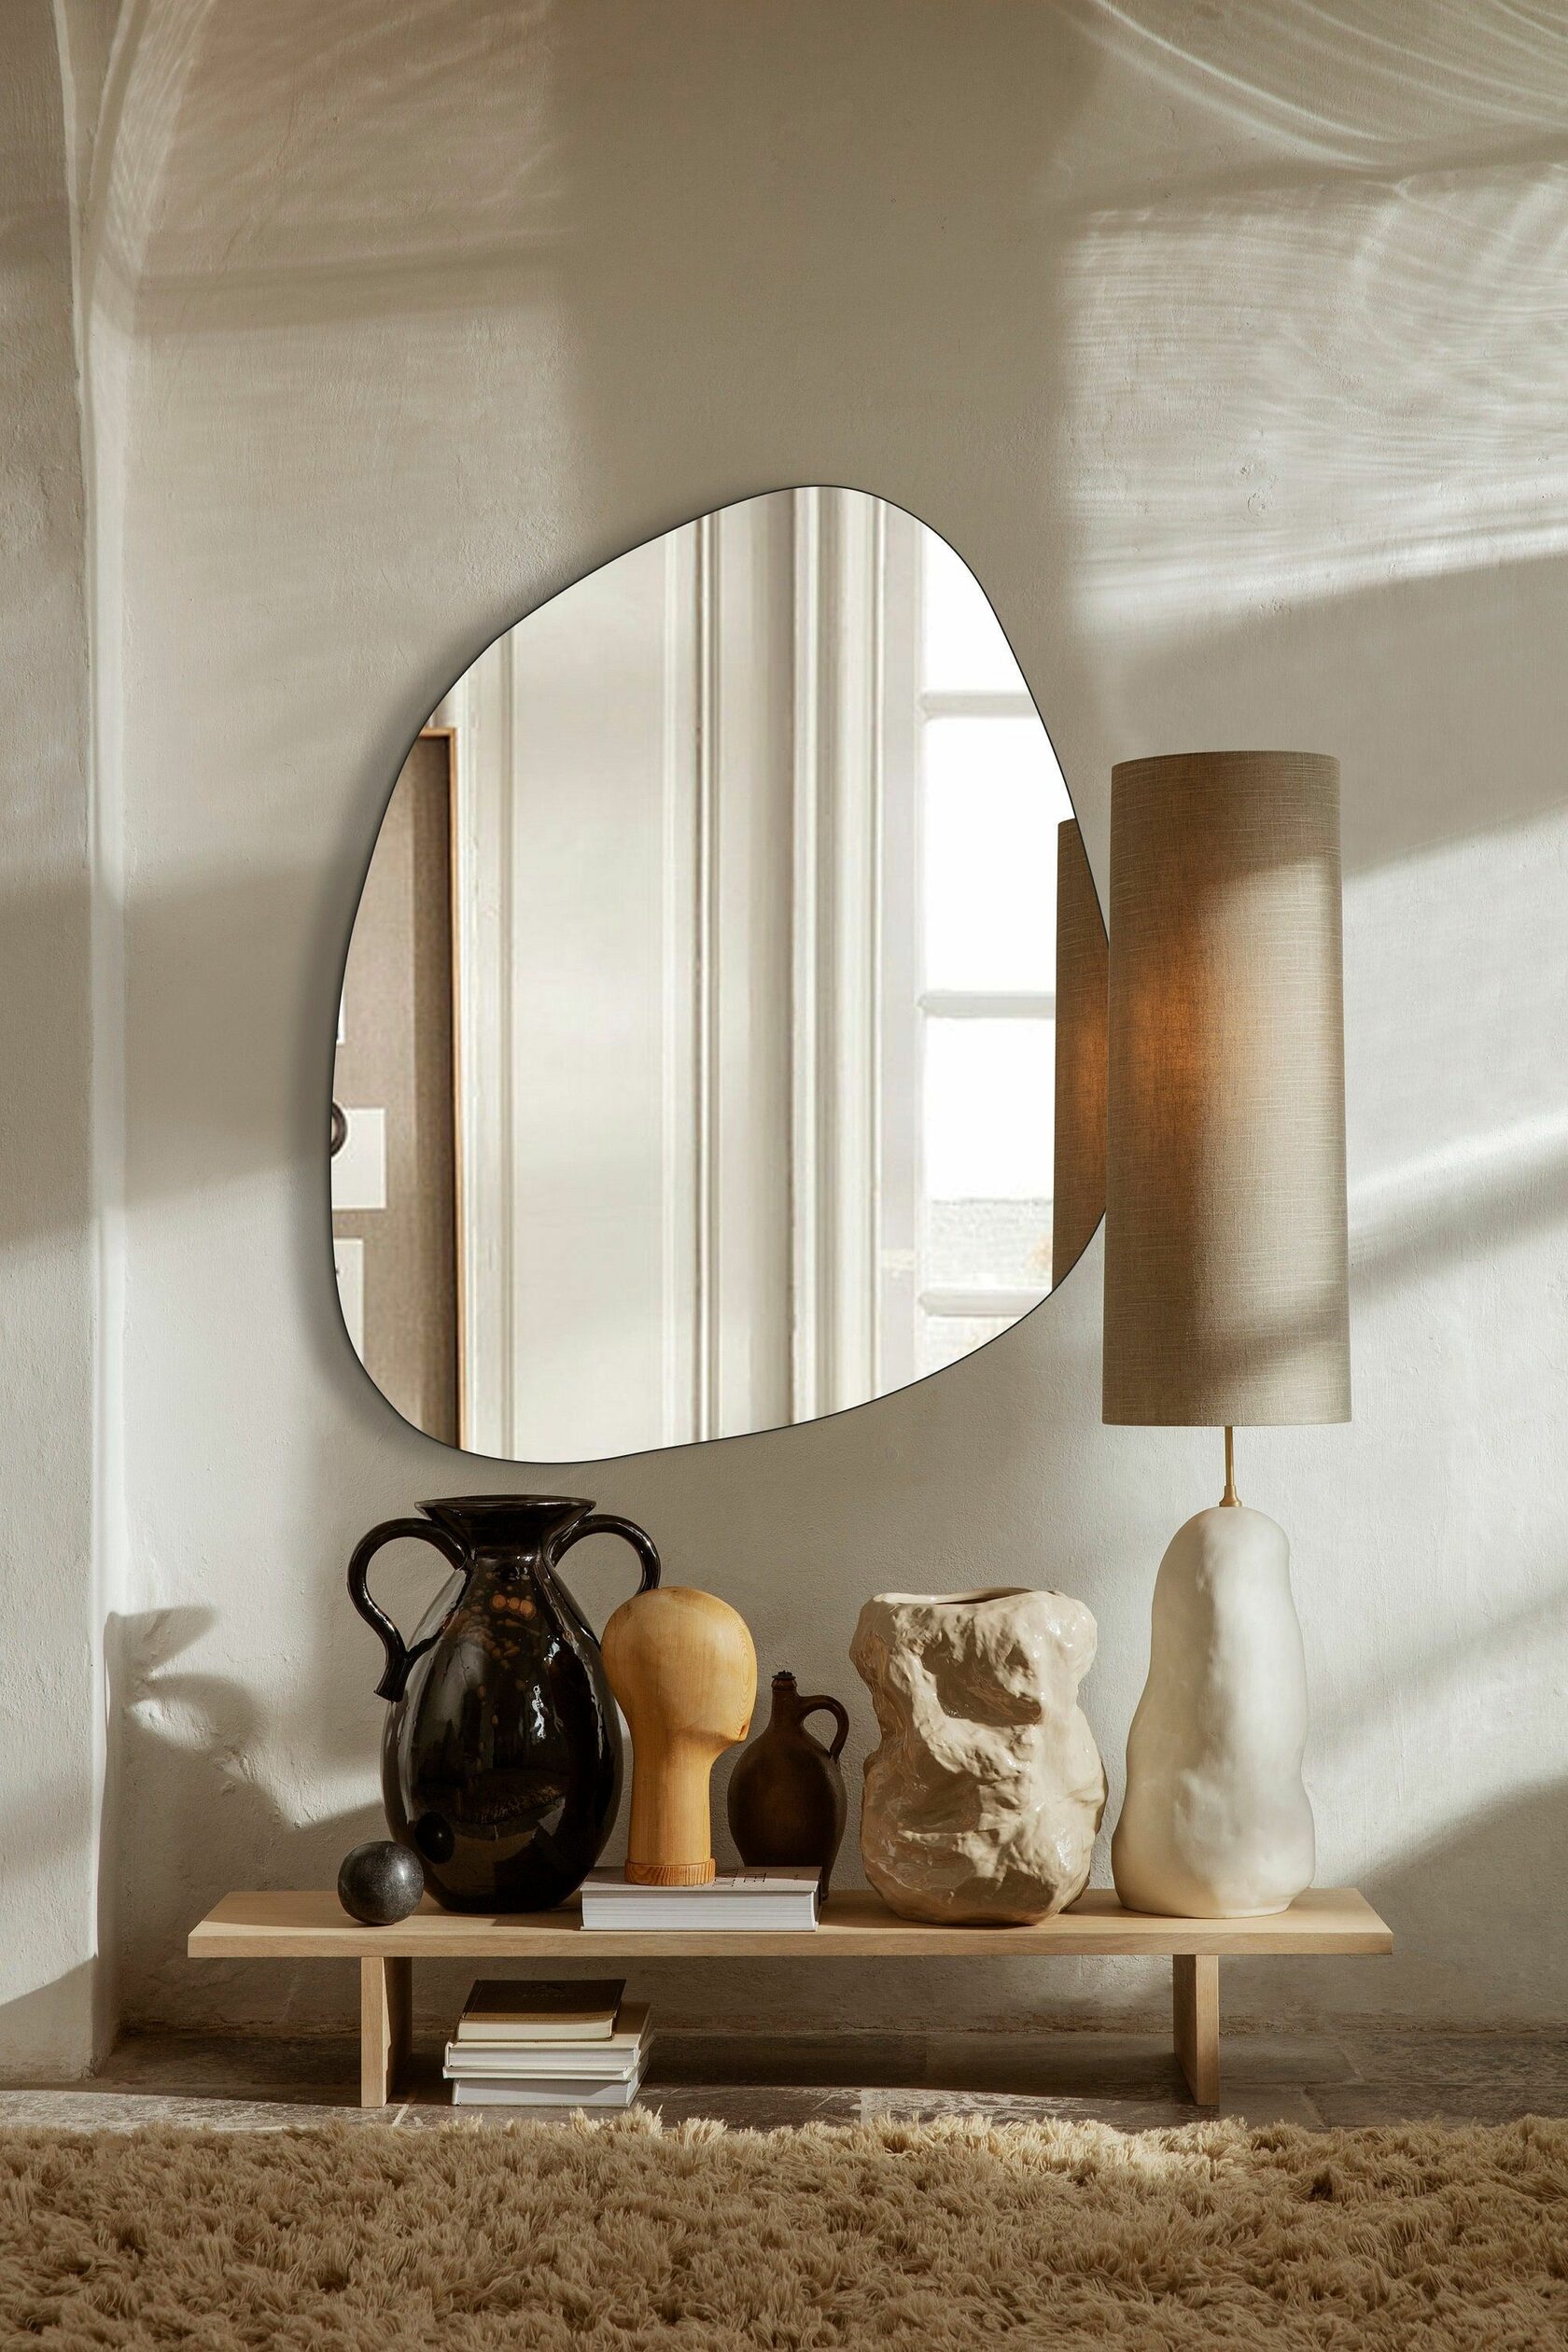 Зеркала в интерьере как элемент декора